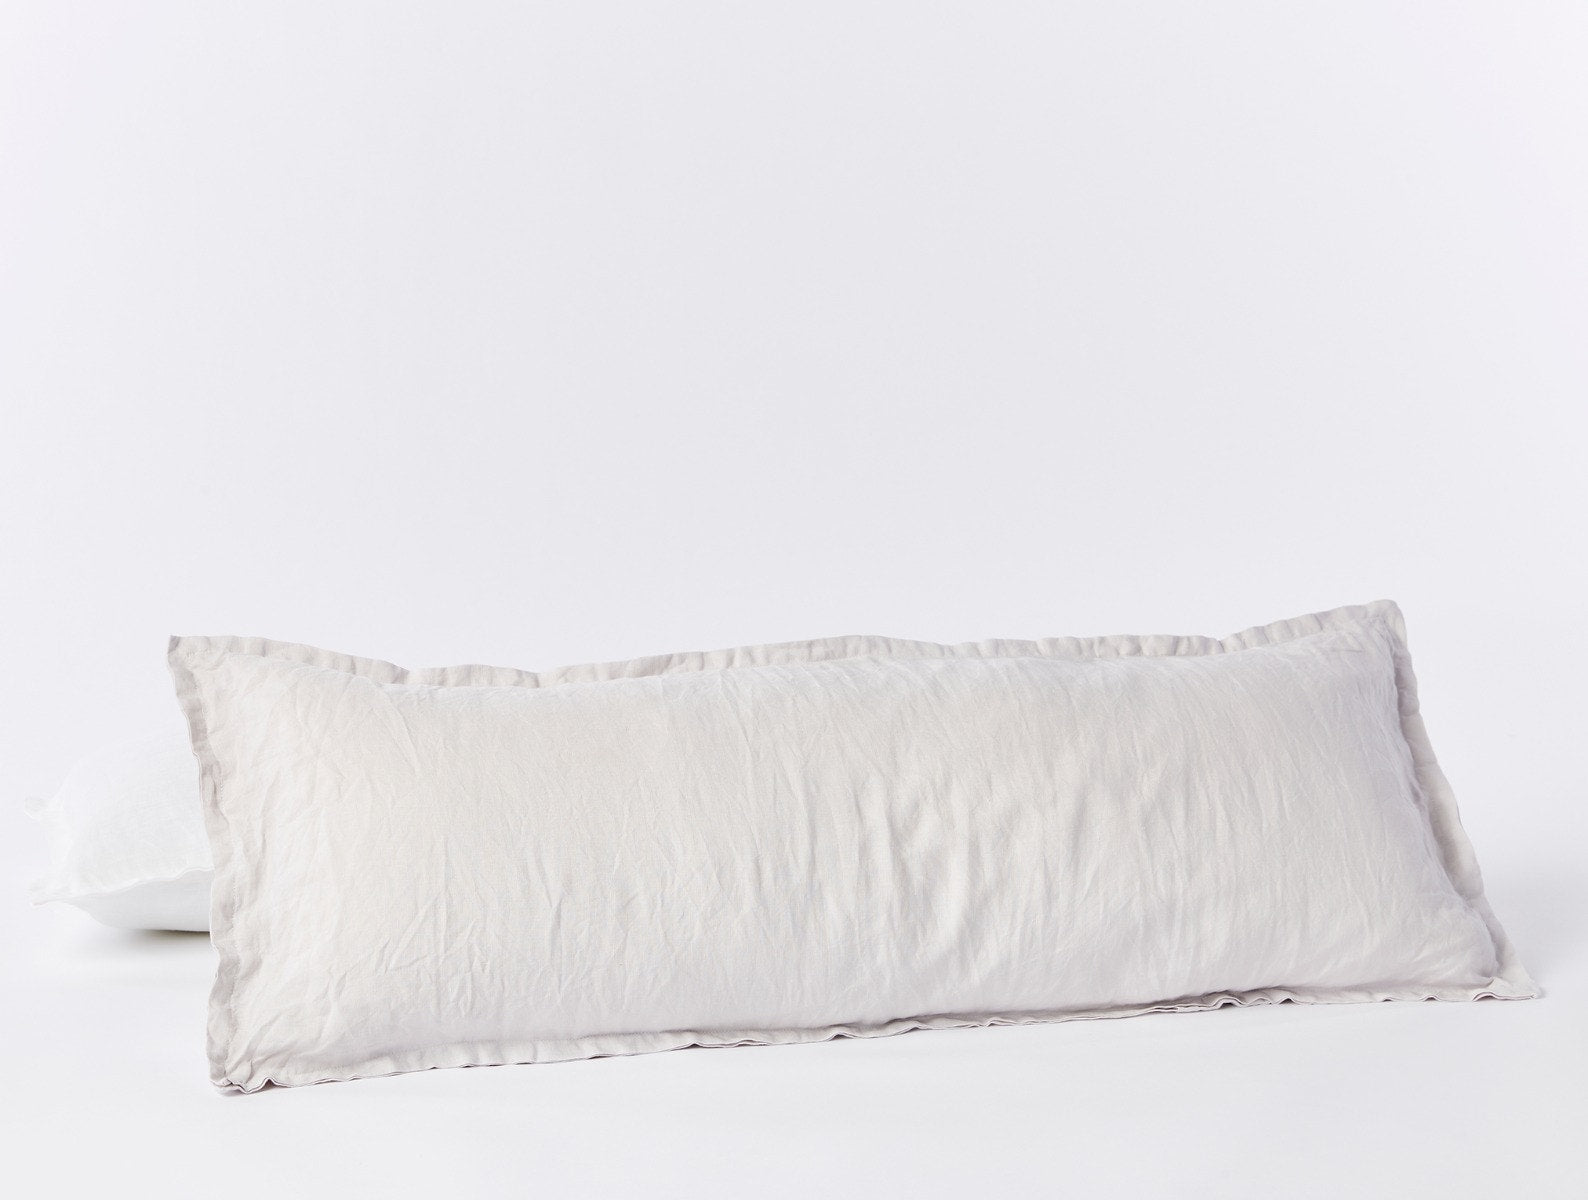 8 Best Lumbar Support Pillows for 2021 - Best Back Pillows